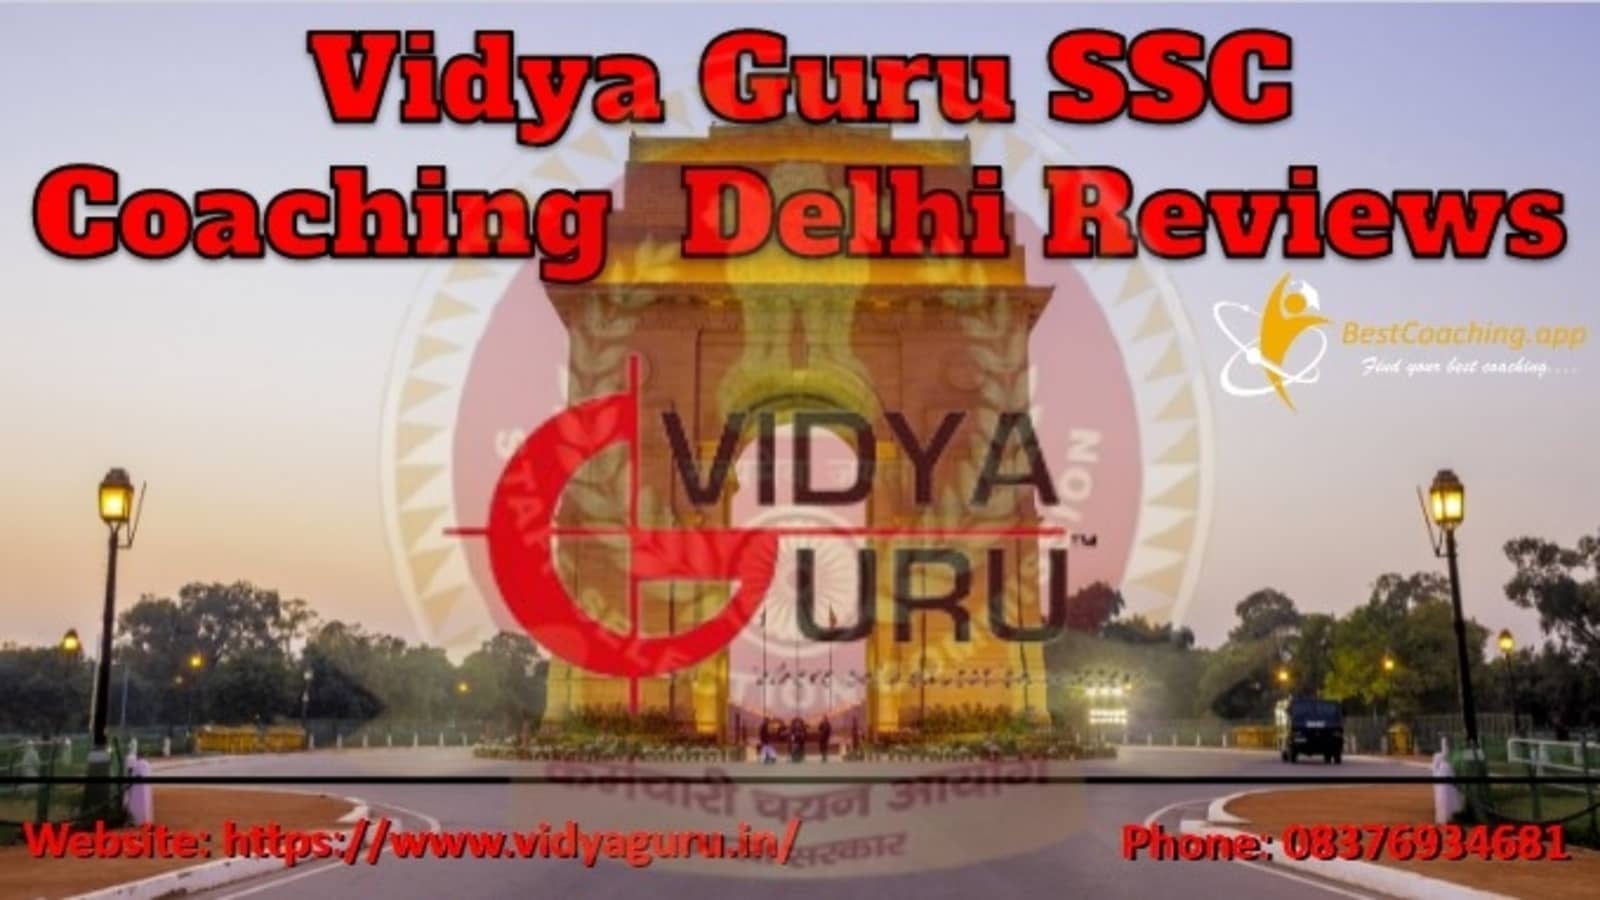 Vidya Guru SSC Coaching in Delhi